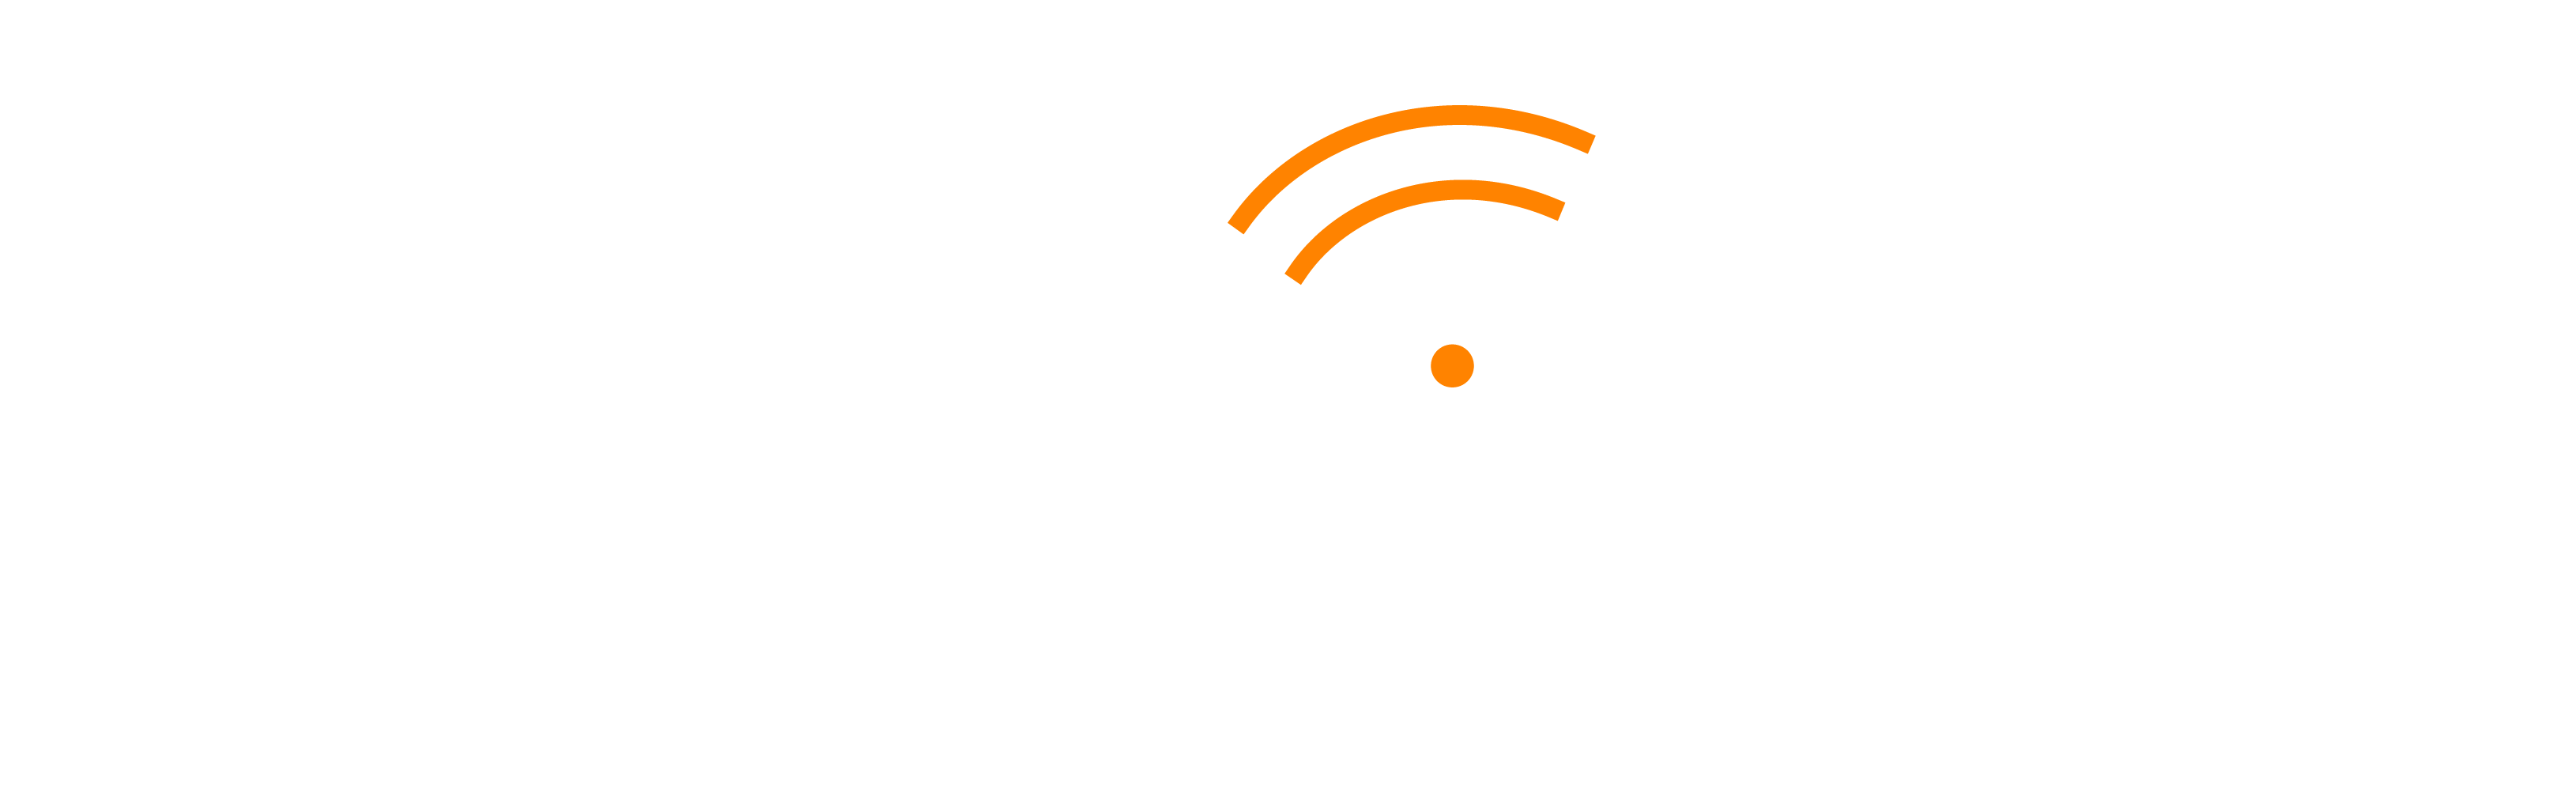 SecurEdge_WiFi_Logo_White-Orange